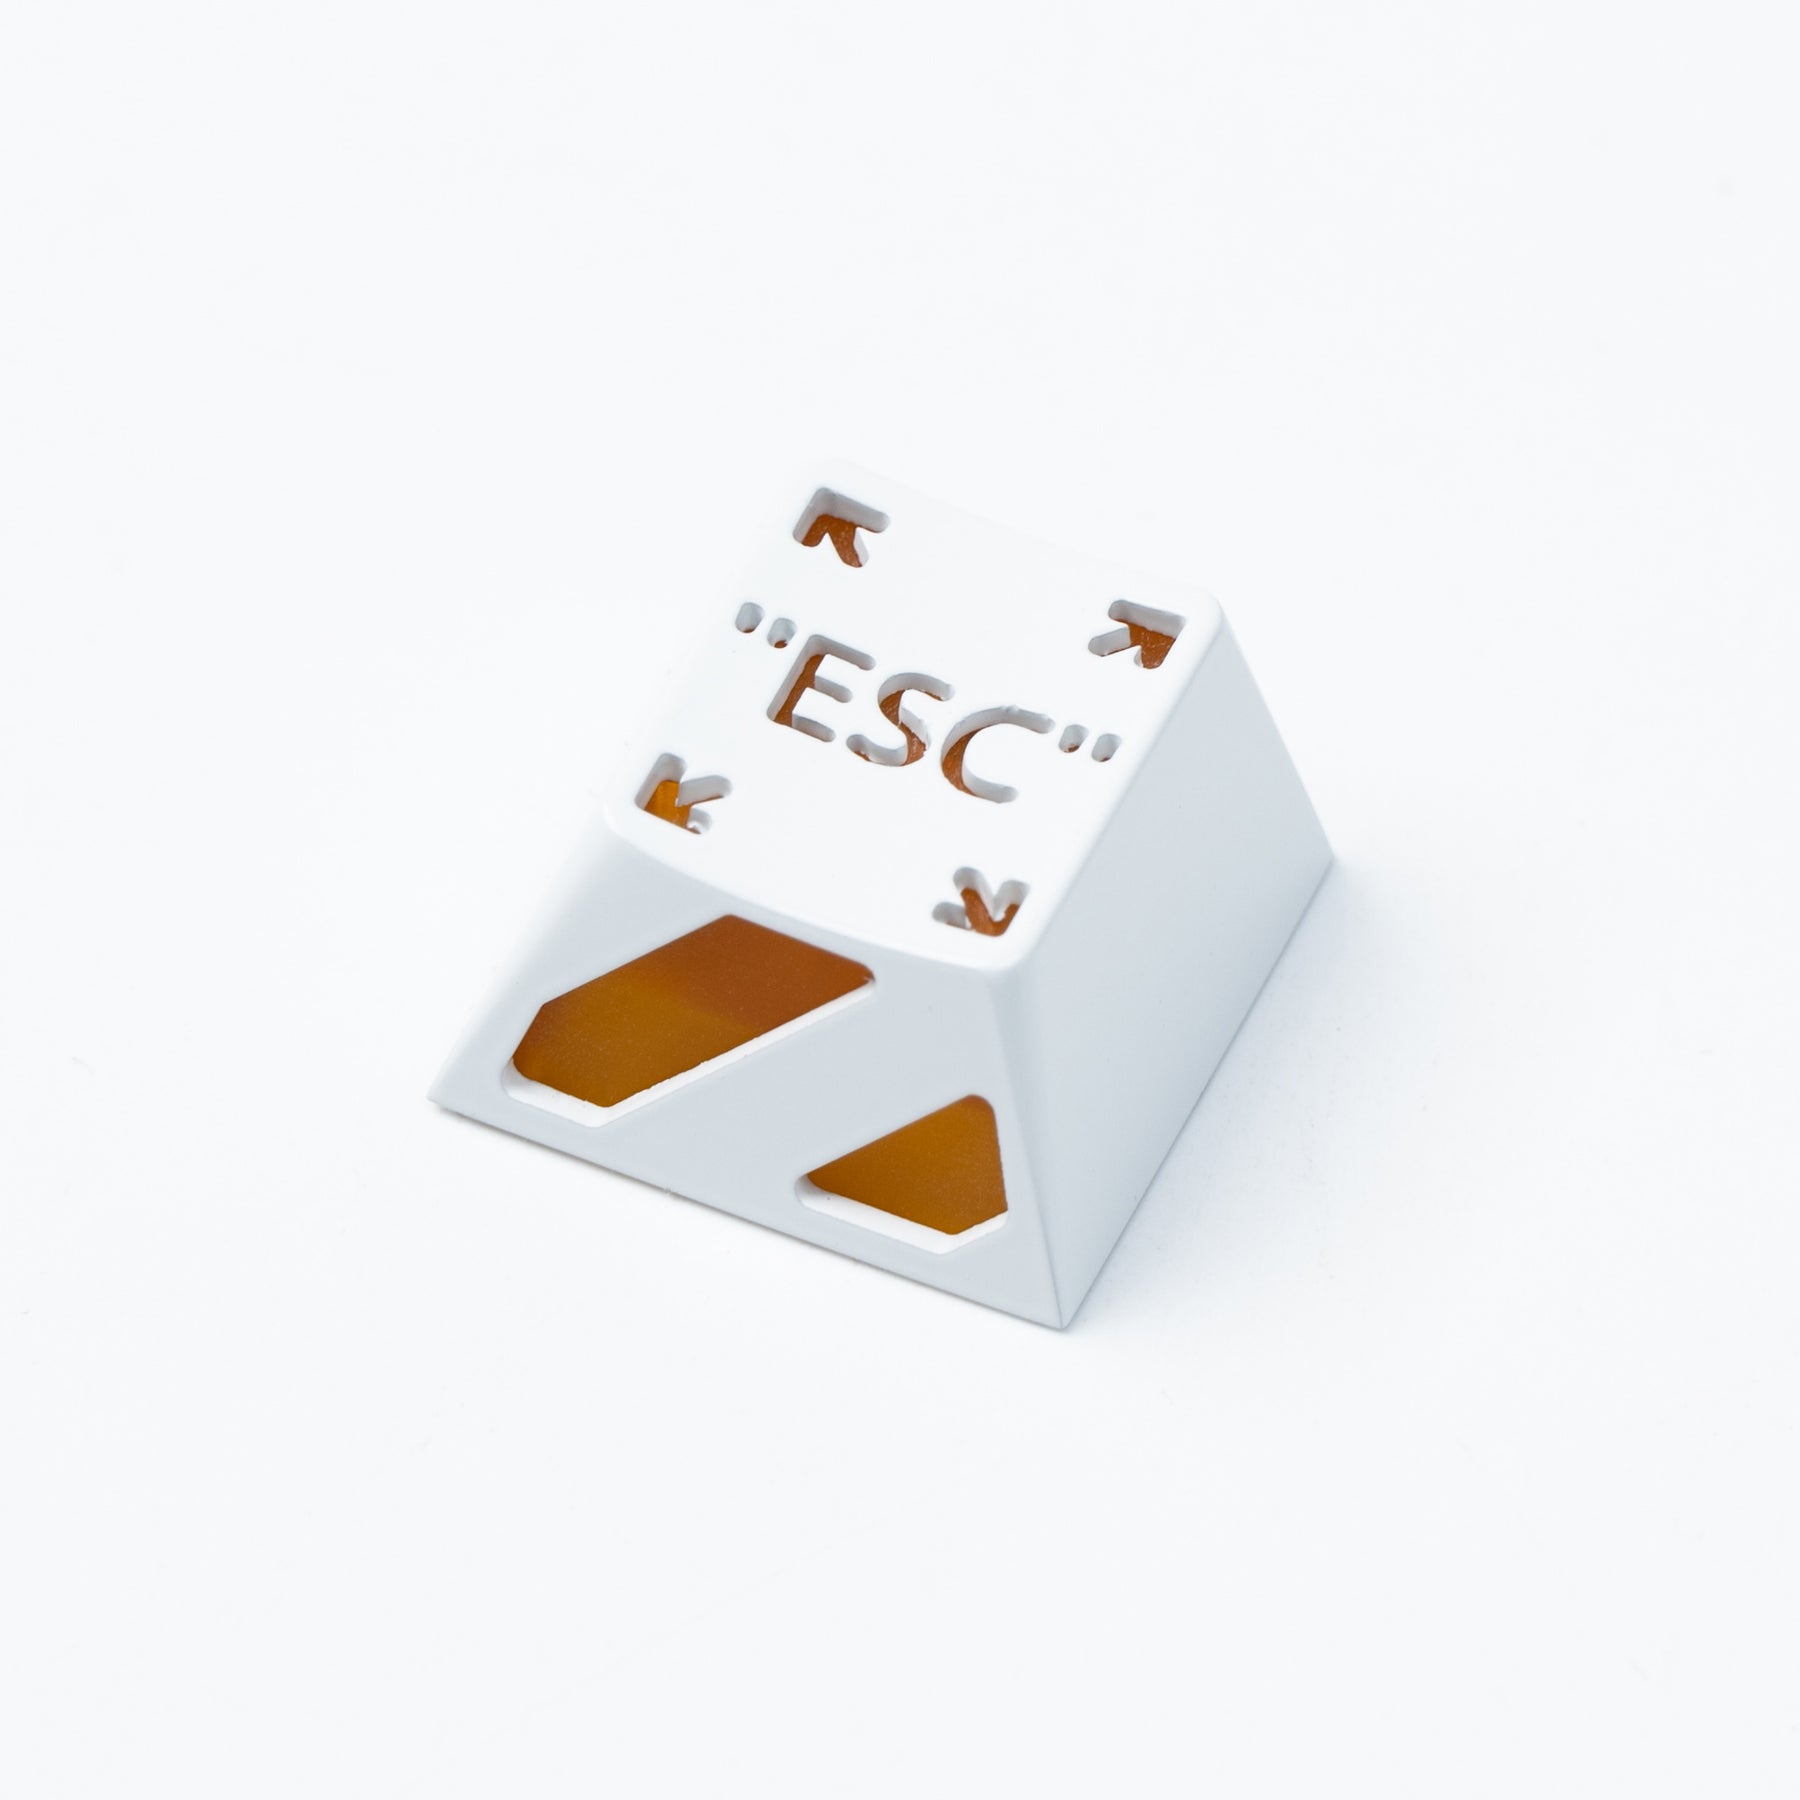 Spacebar/ESC/Enter Key Aluminum Alloy Artisan Keycap